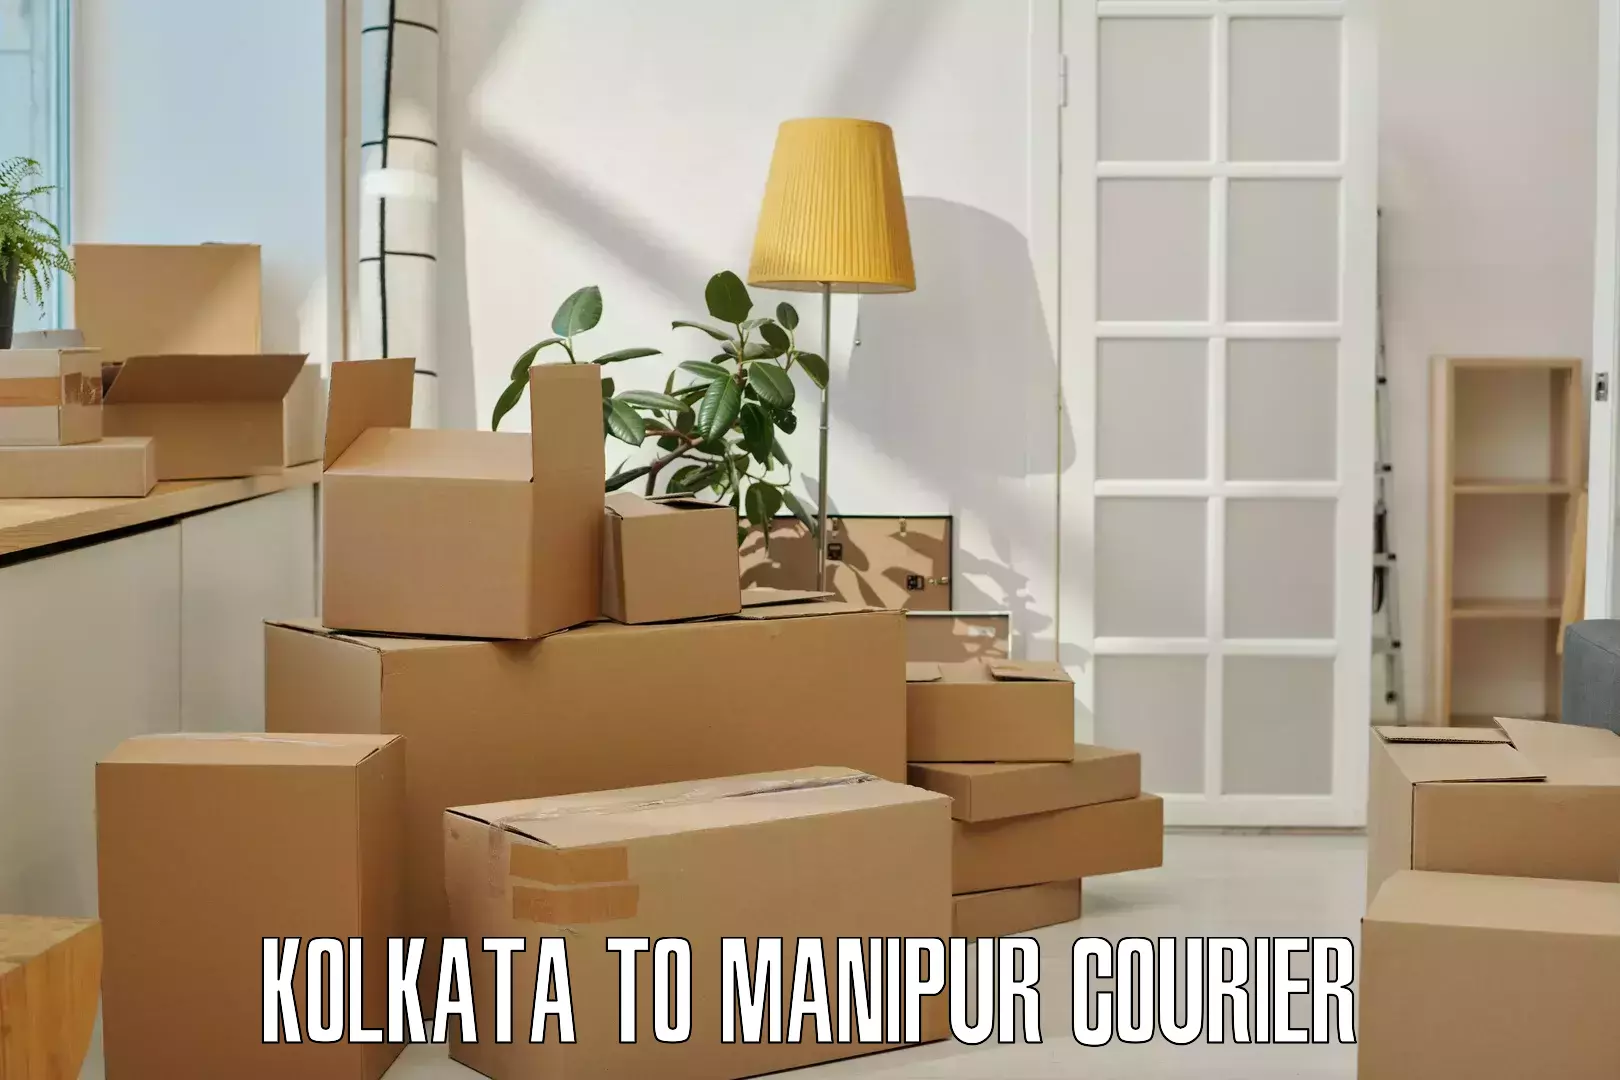 Nationwide parcel services Kolkata to Senapati